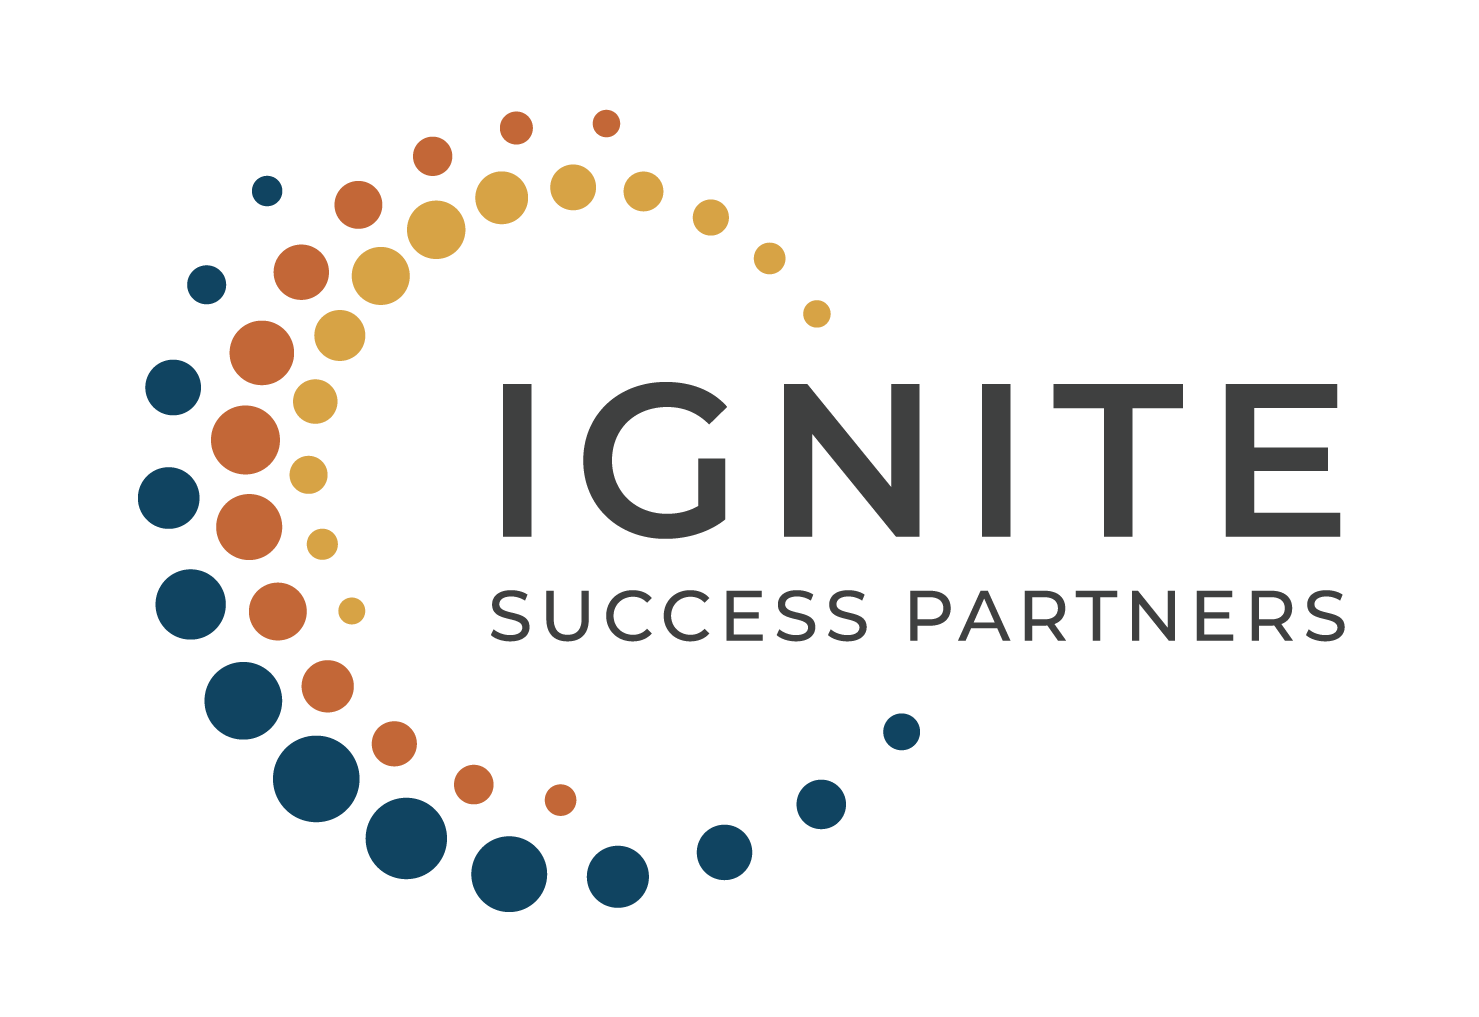 Ignite Success Partners